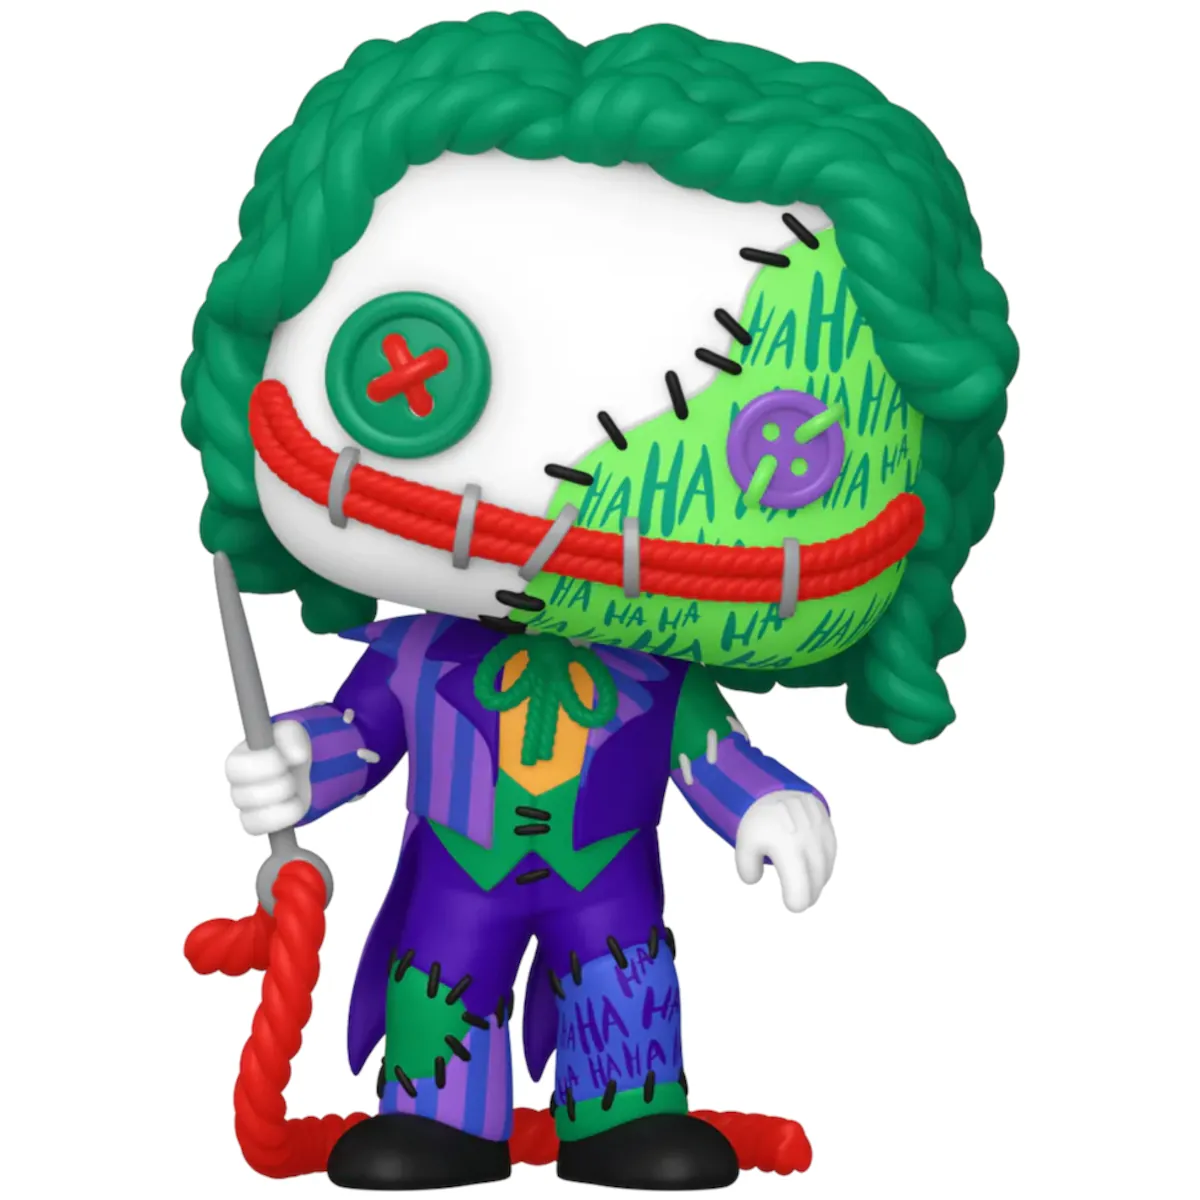 80906 Funko Pop! Heroes - DC Comics Batman - Patchwork The Joker Collectable Vinyl Figure